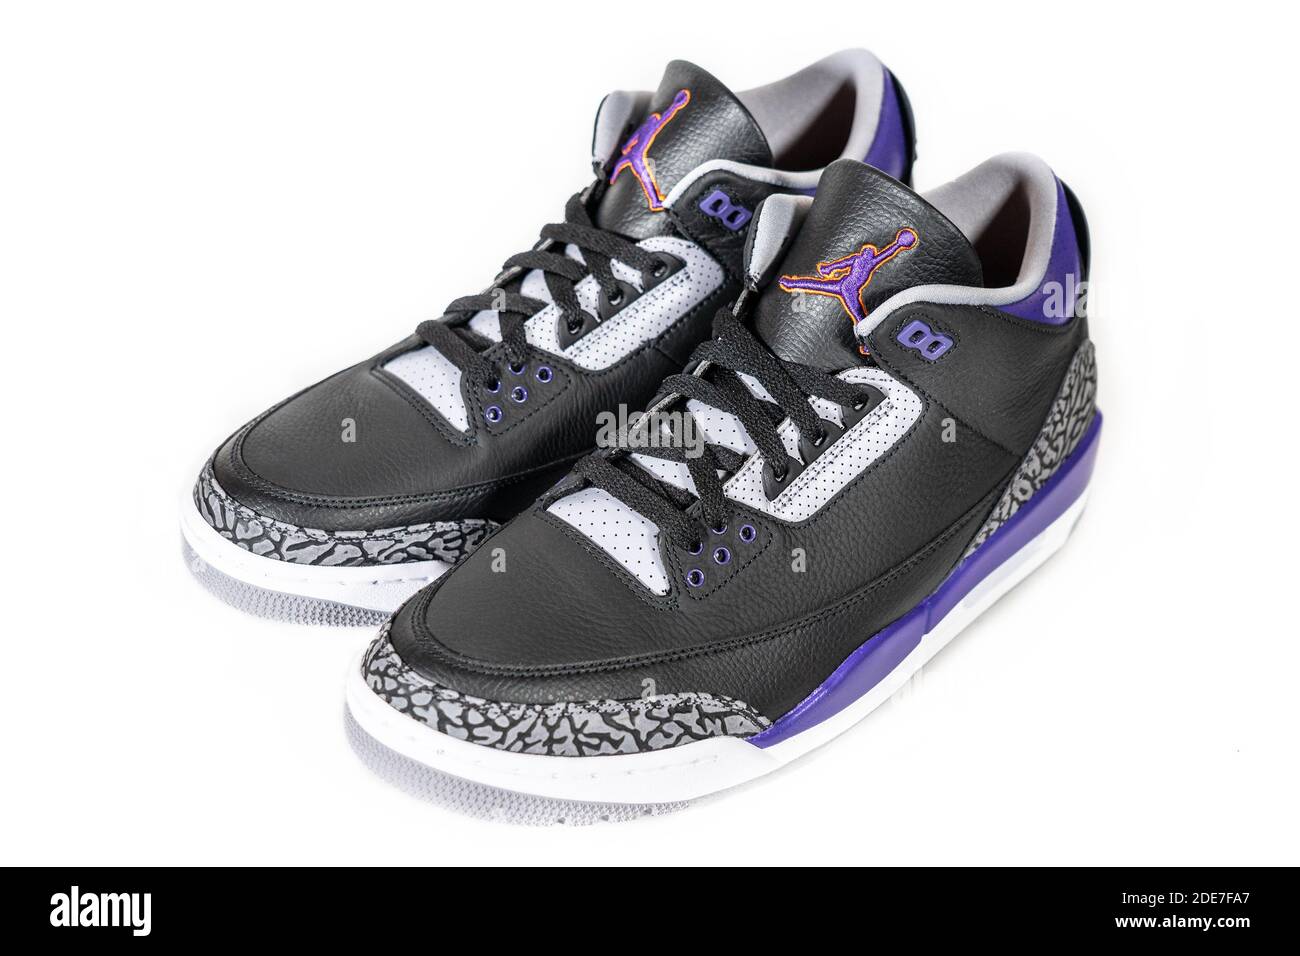 Air Jordan 3 Retro court Purple - légendaire célèbre Nike et Jordan marque rétro basket-ball ou chaussures de sport, maintenant chaussures de mode et de style de vie : Moscou, Russie - novembre 2020. Banque D'Images